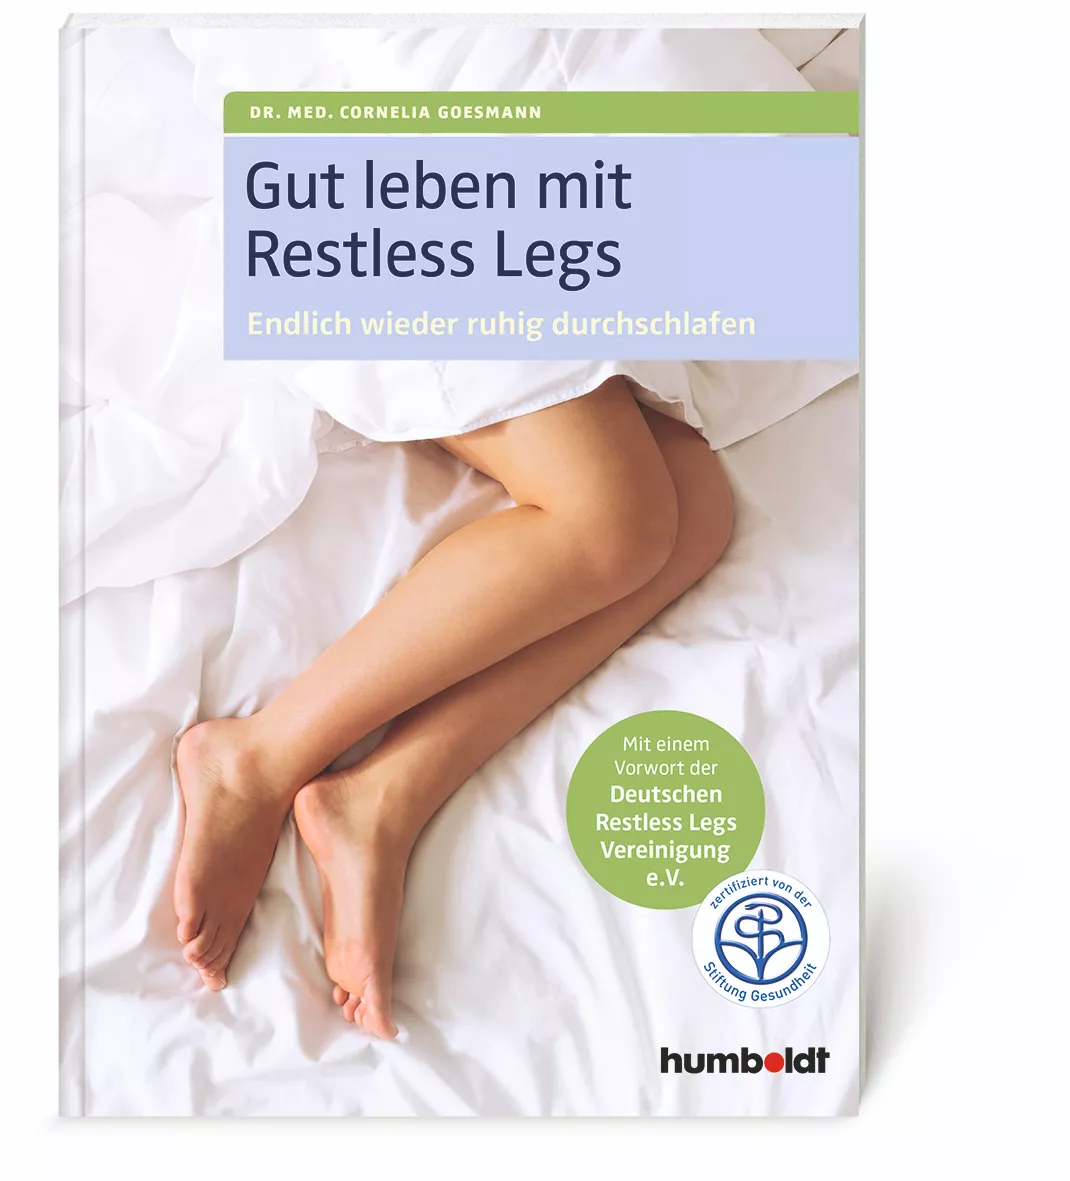 Gut leben mit Restless Legs - Buchempfehlung für RLS Patienten